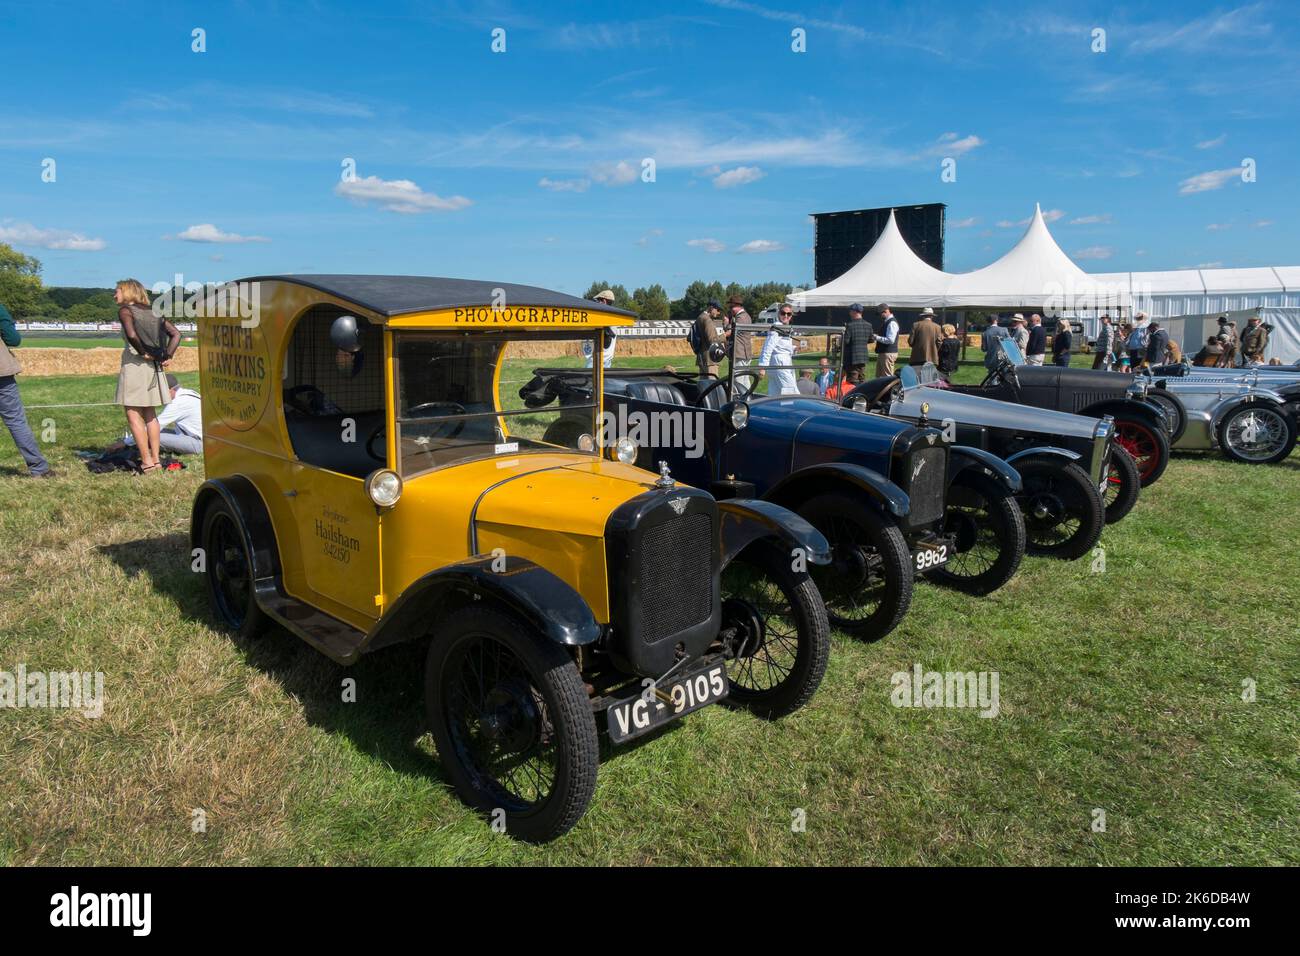 Zur Feier des hundertjährigen Jubiläums der Markteinführung des Fahrzeugs im Jahr 1922, eine Ausstellung von Austin 7 Autos auf der Rennstrecke, BARC Revival Meeting, Goodwood, Chichester, Großbritannien Stockfoto